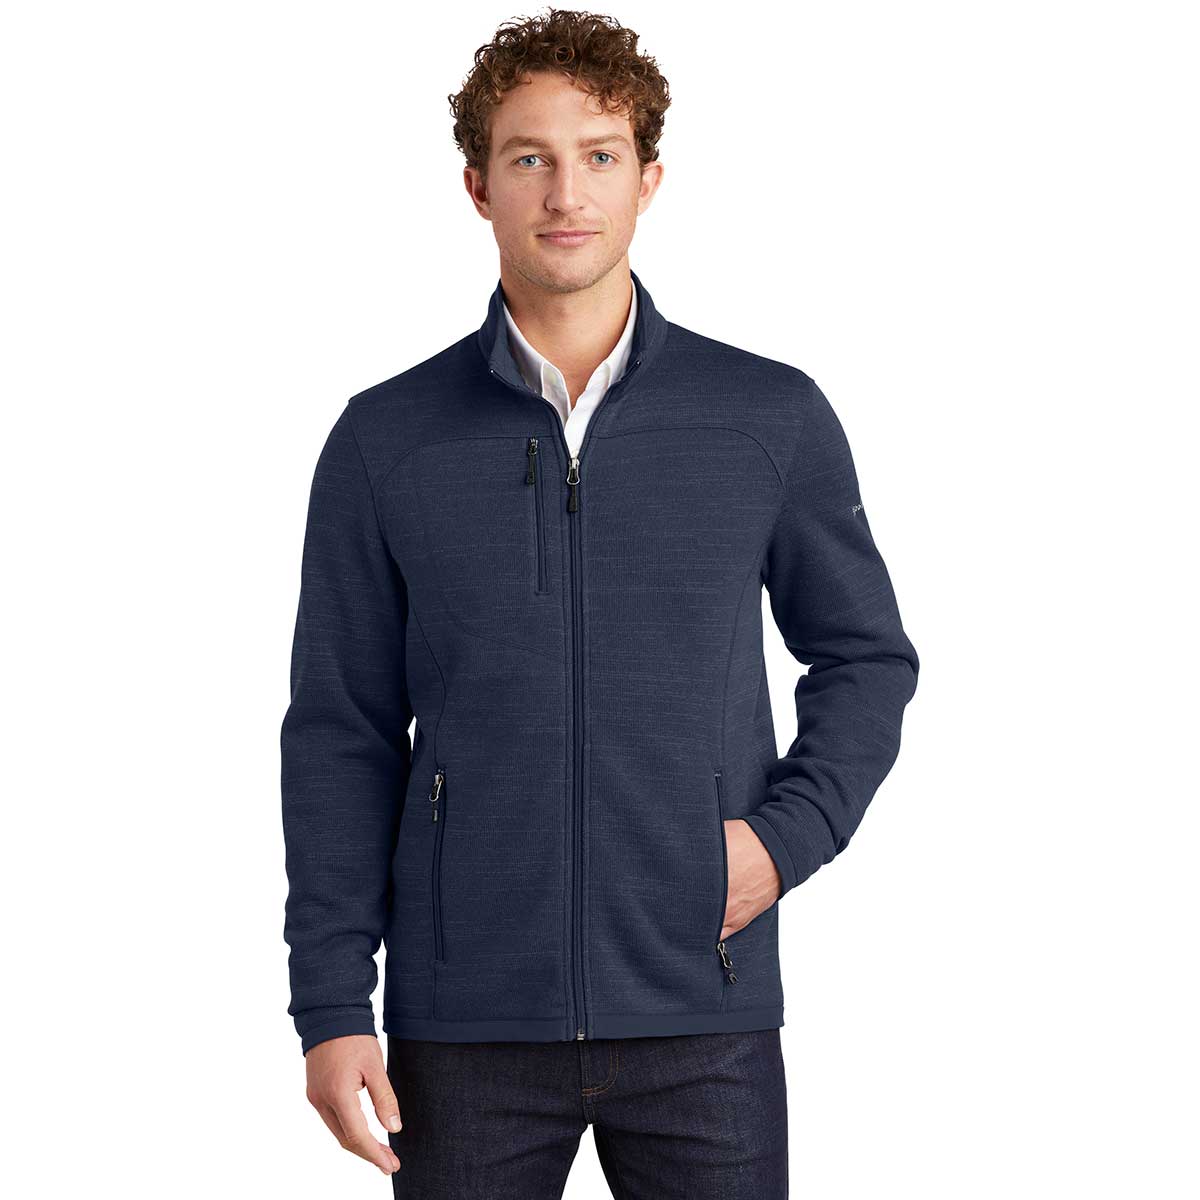  Eddie Bauer Heathered Sweater Fleece Jacket - Men's 153509-M